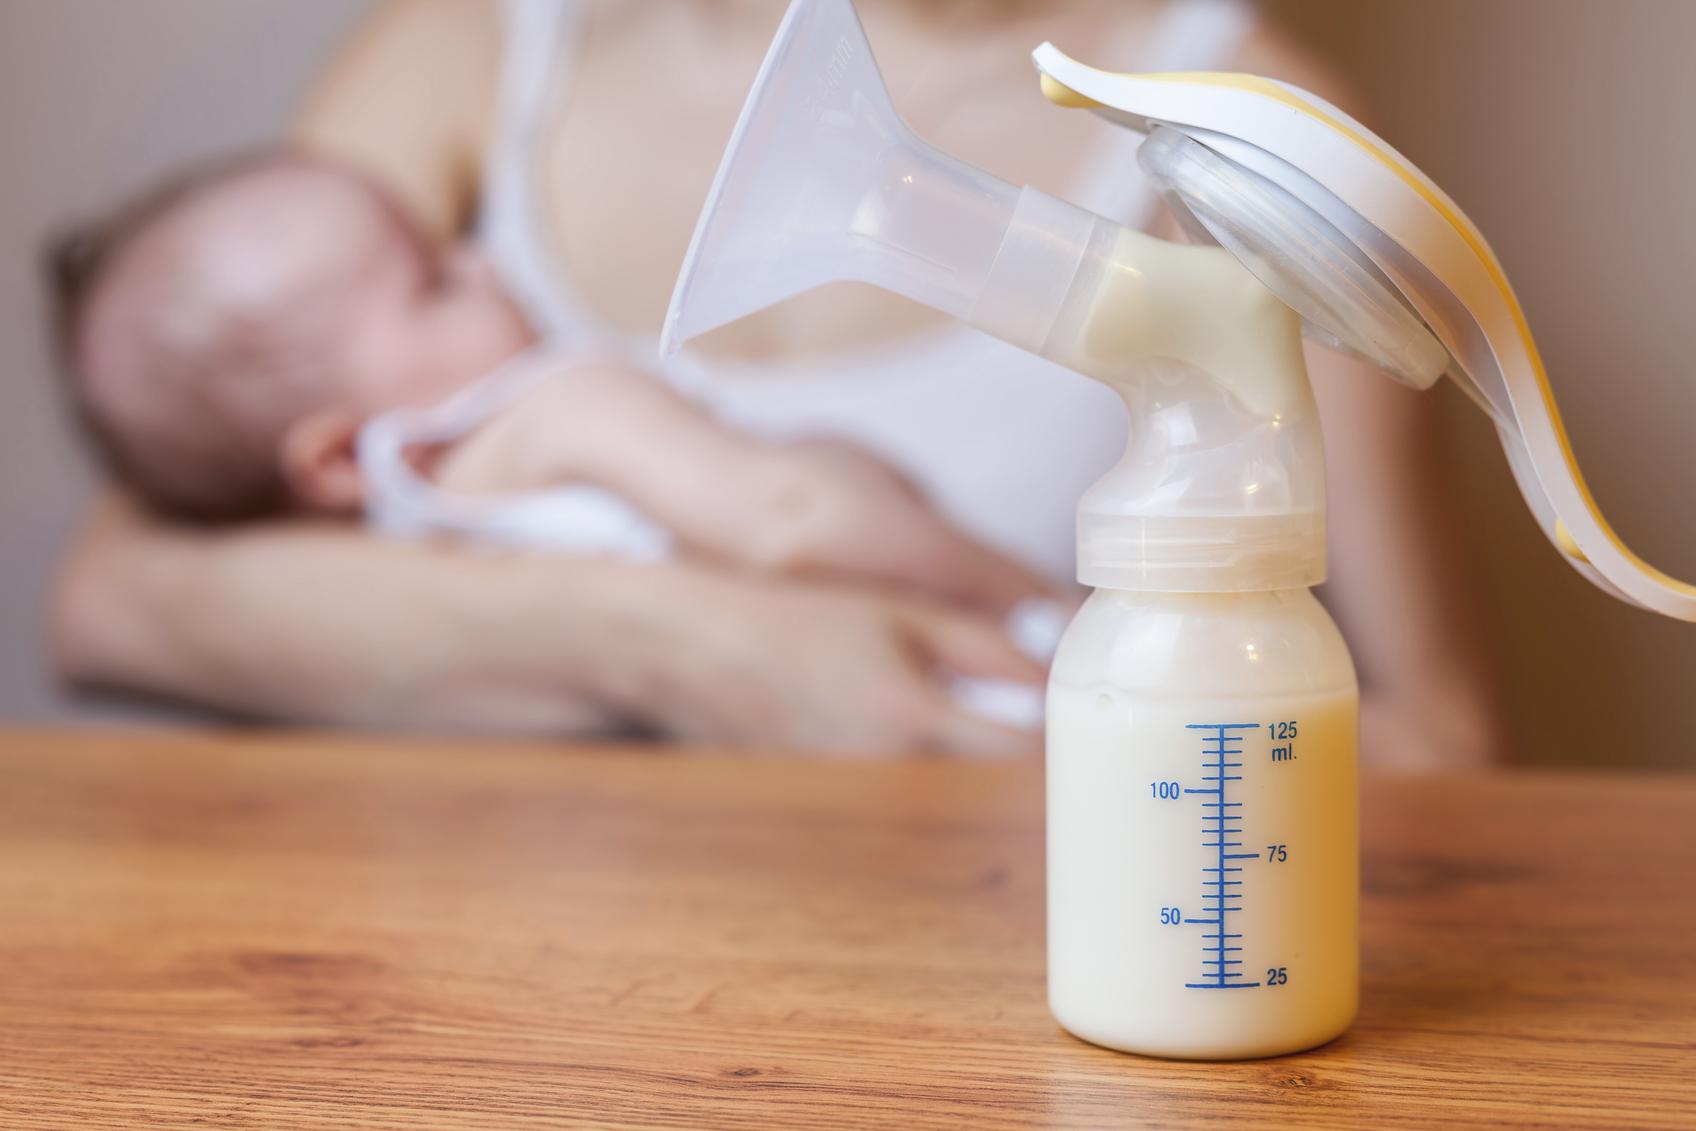 Niekedy to inak nejde: Ako odsávať materské mlieko správne | Najmama.sk